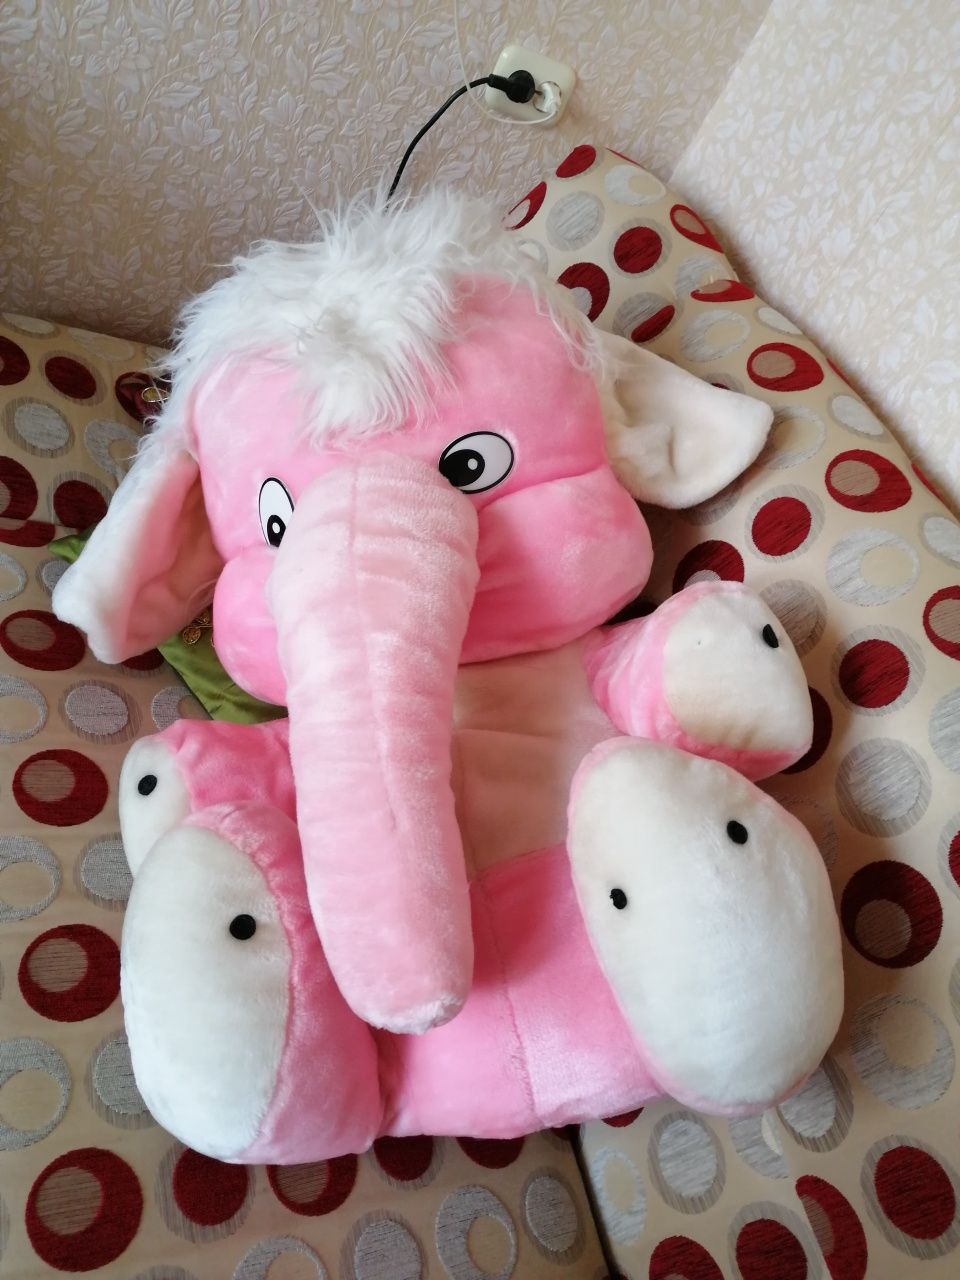 Продам мягкую игрушку, розовый слон. Крупная. Состояние отличное.